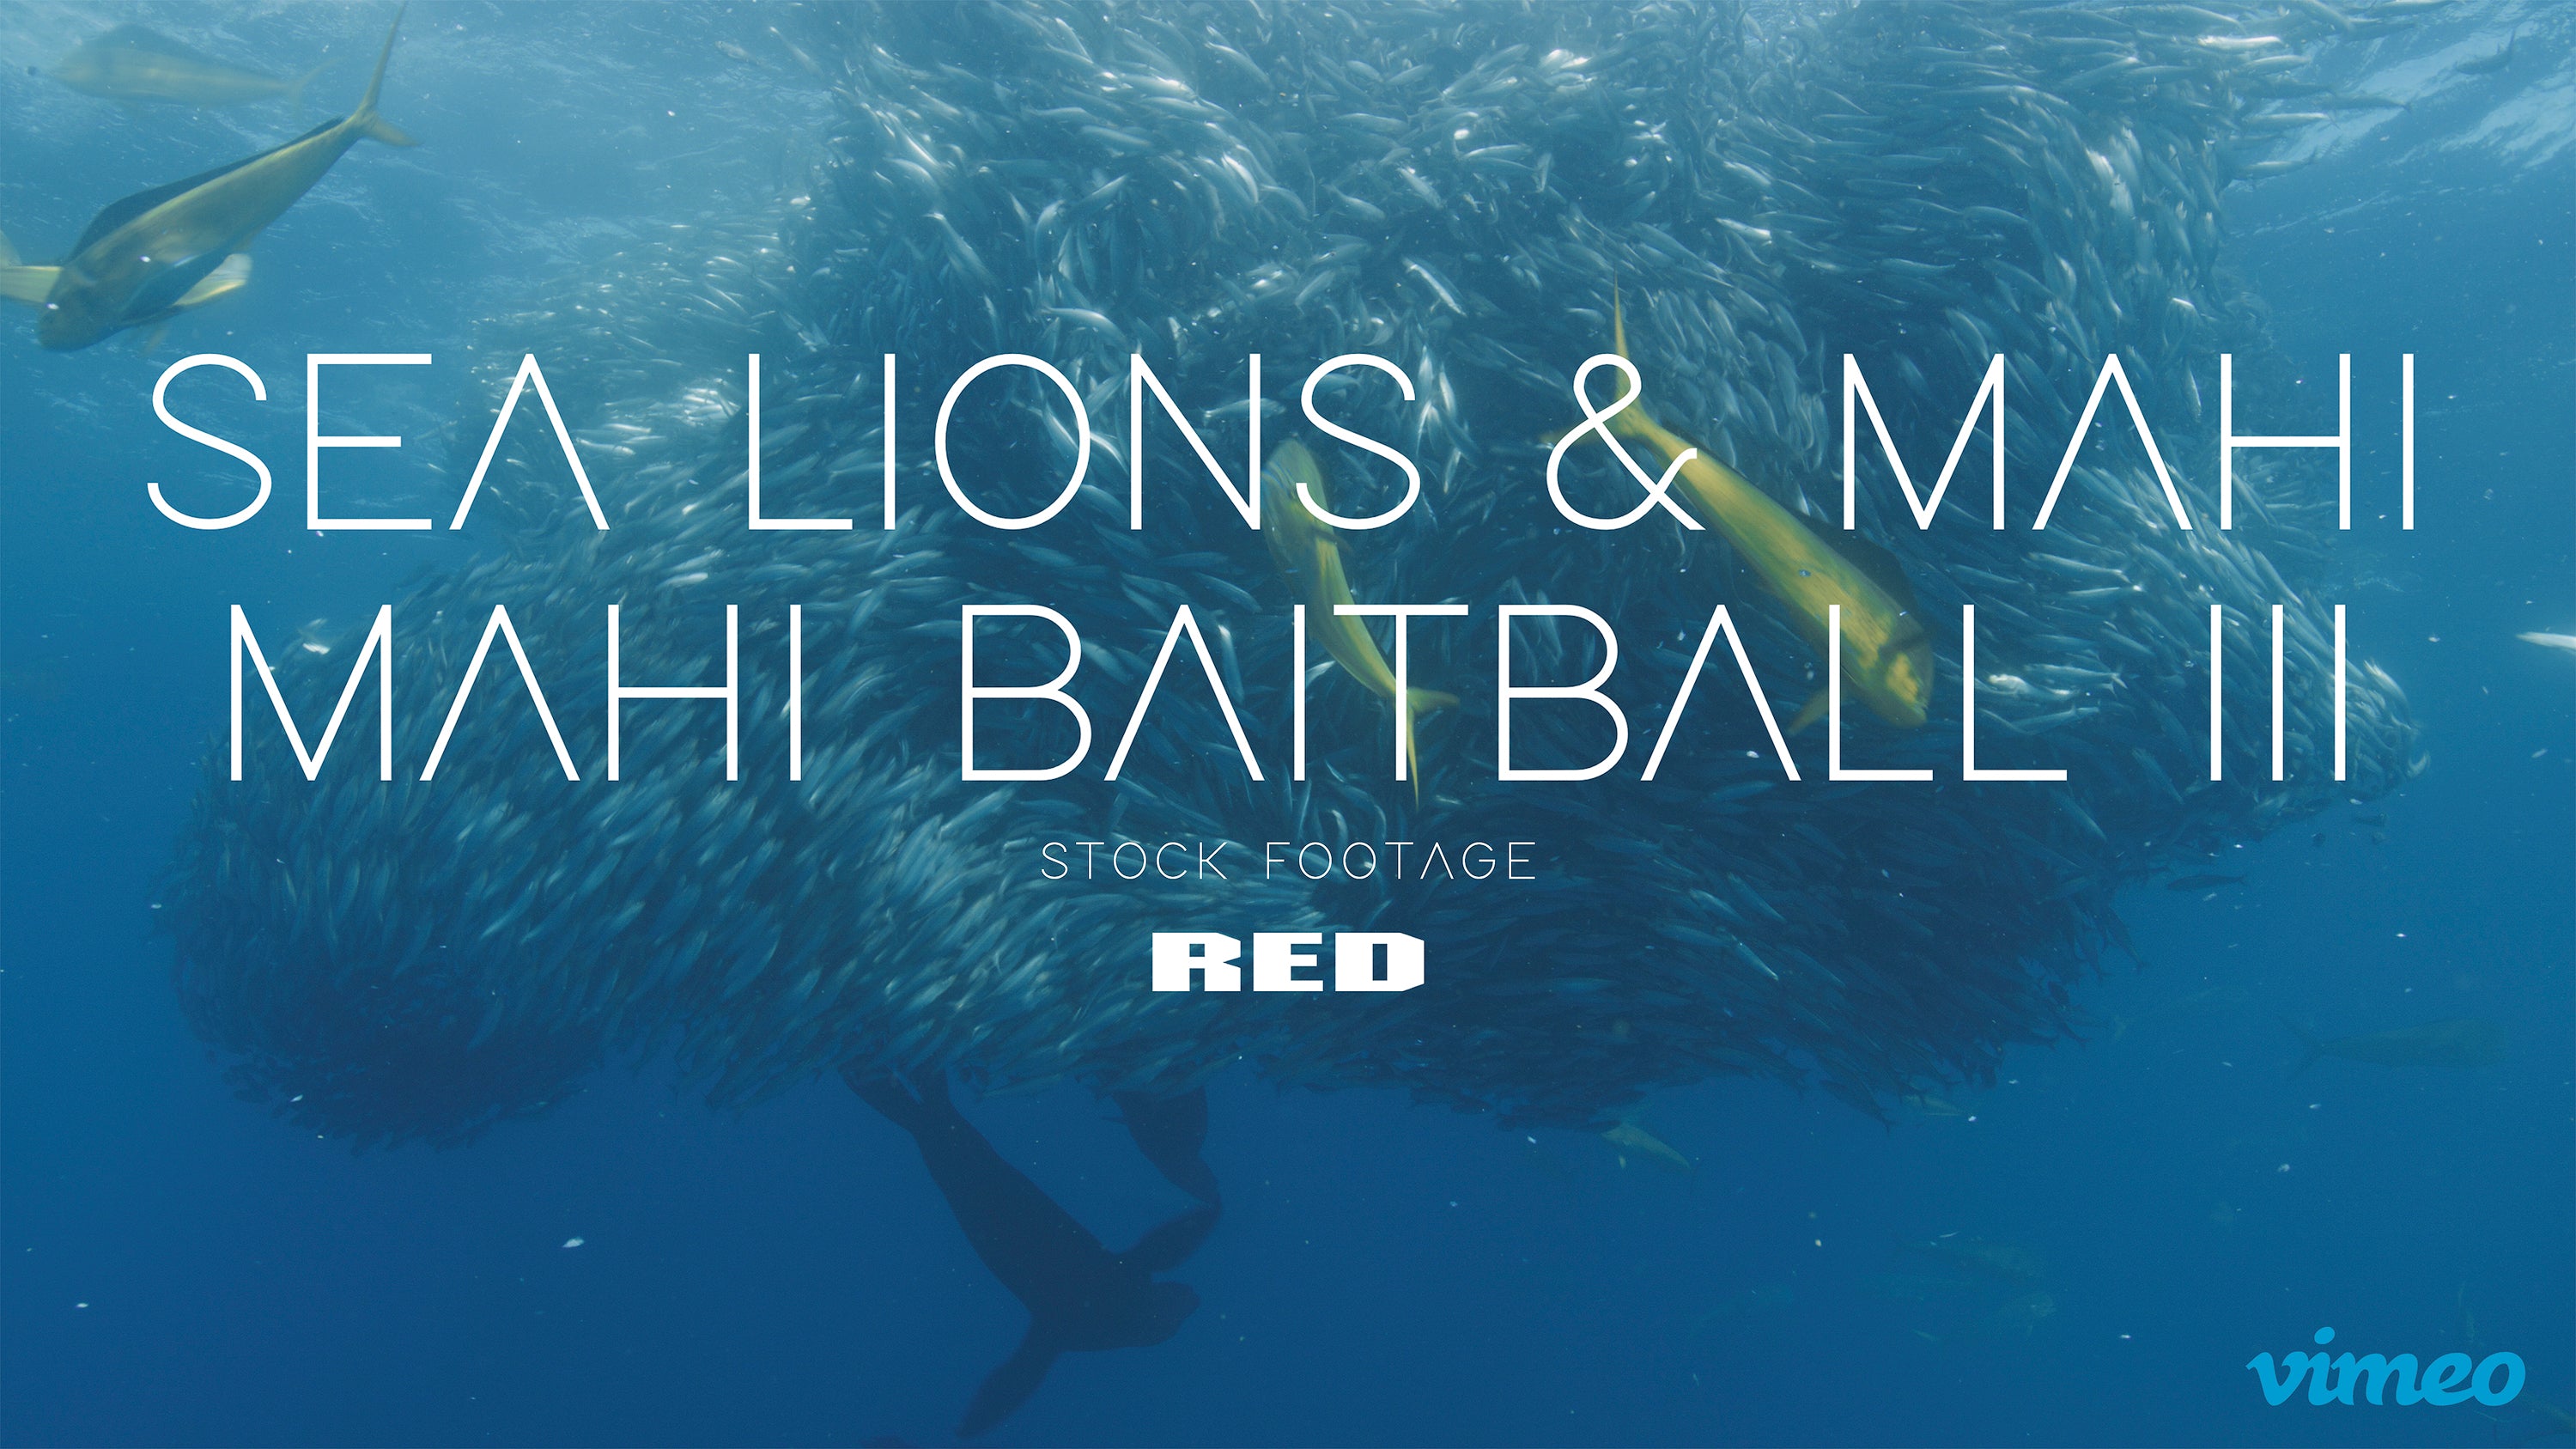 Sea lions & Mahi mahi baitball III